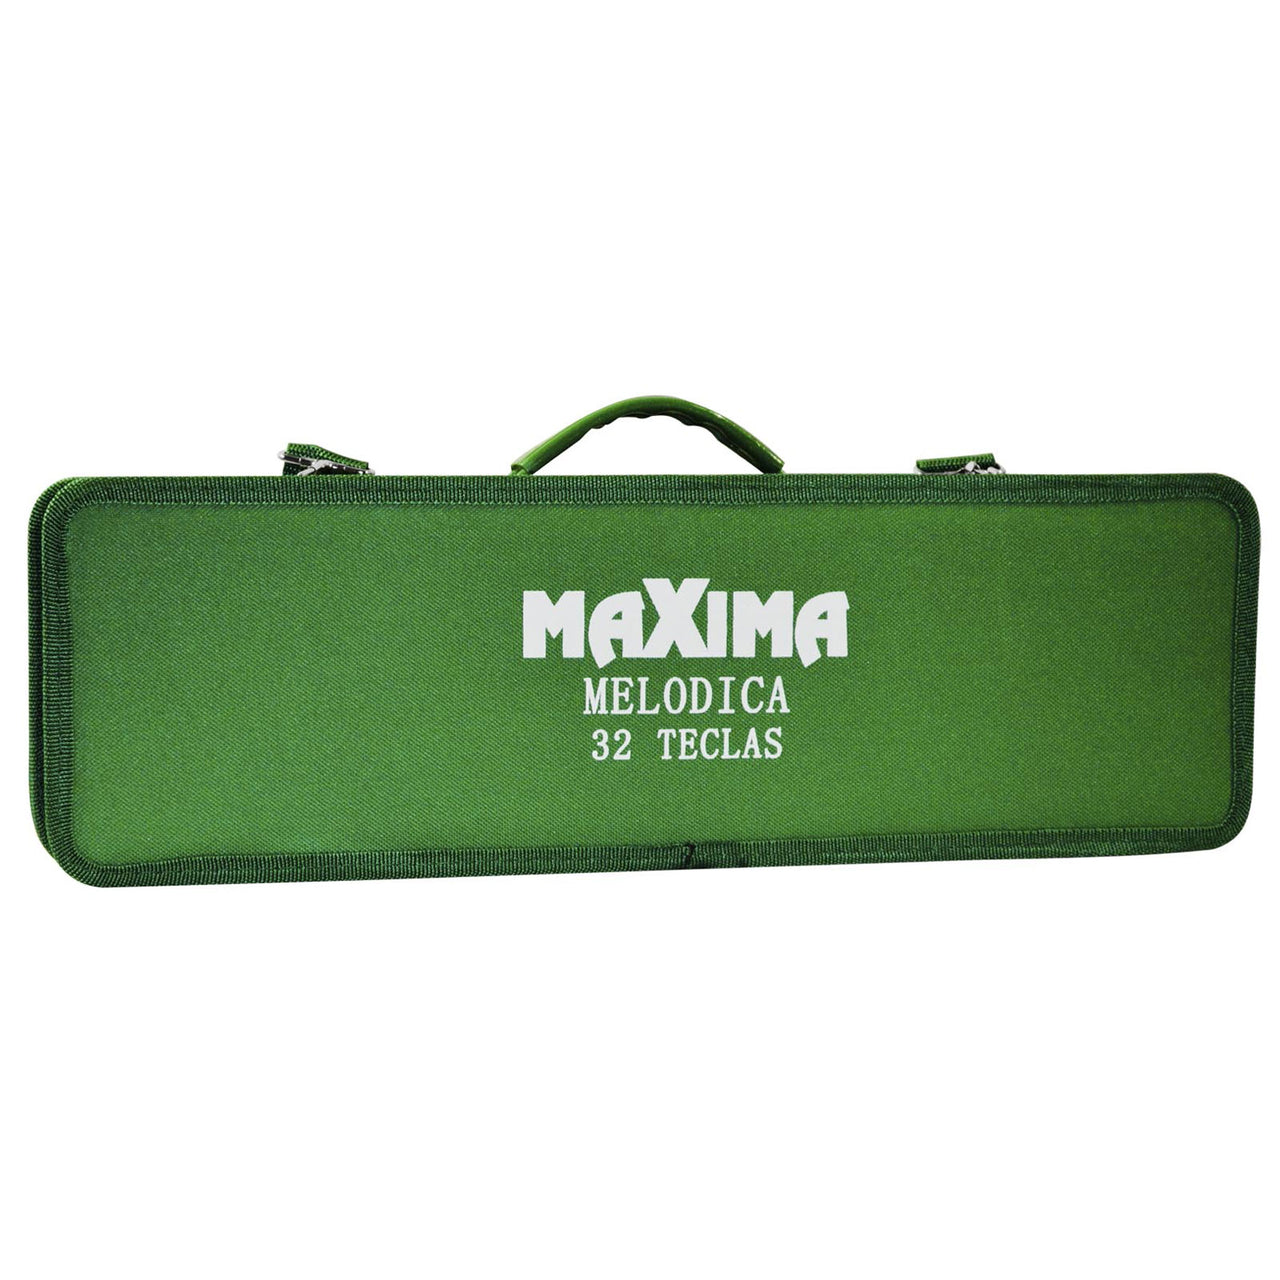 Melodica Maxima 32 Teclas Con Funda Verde Xg-32f